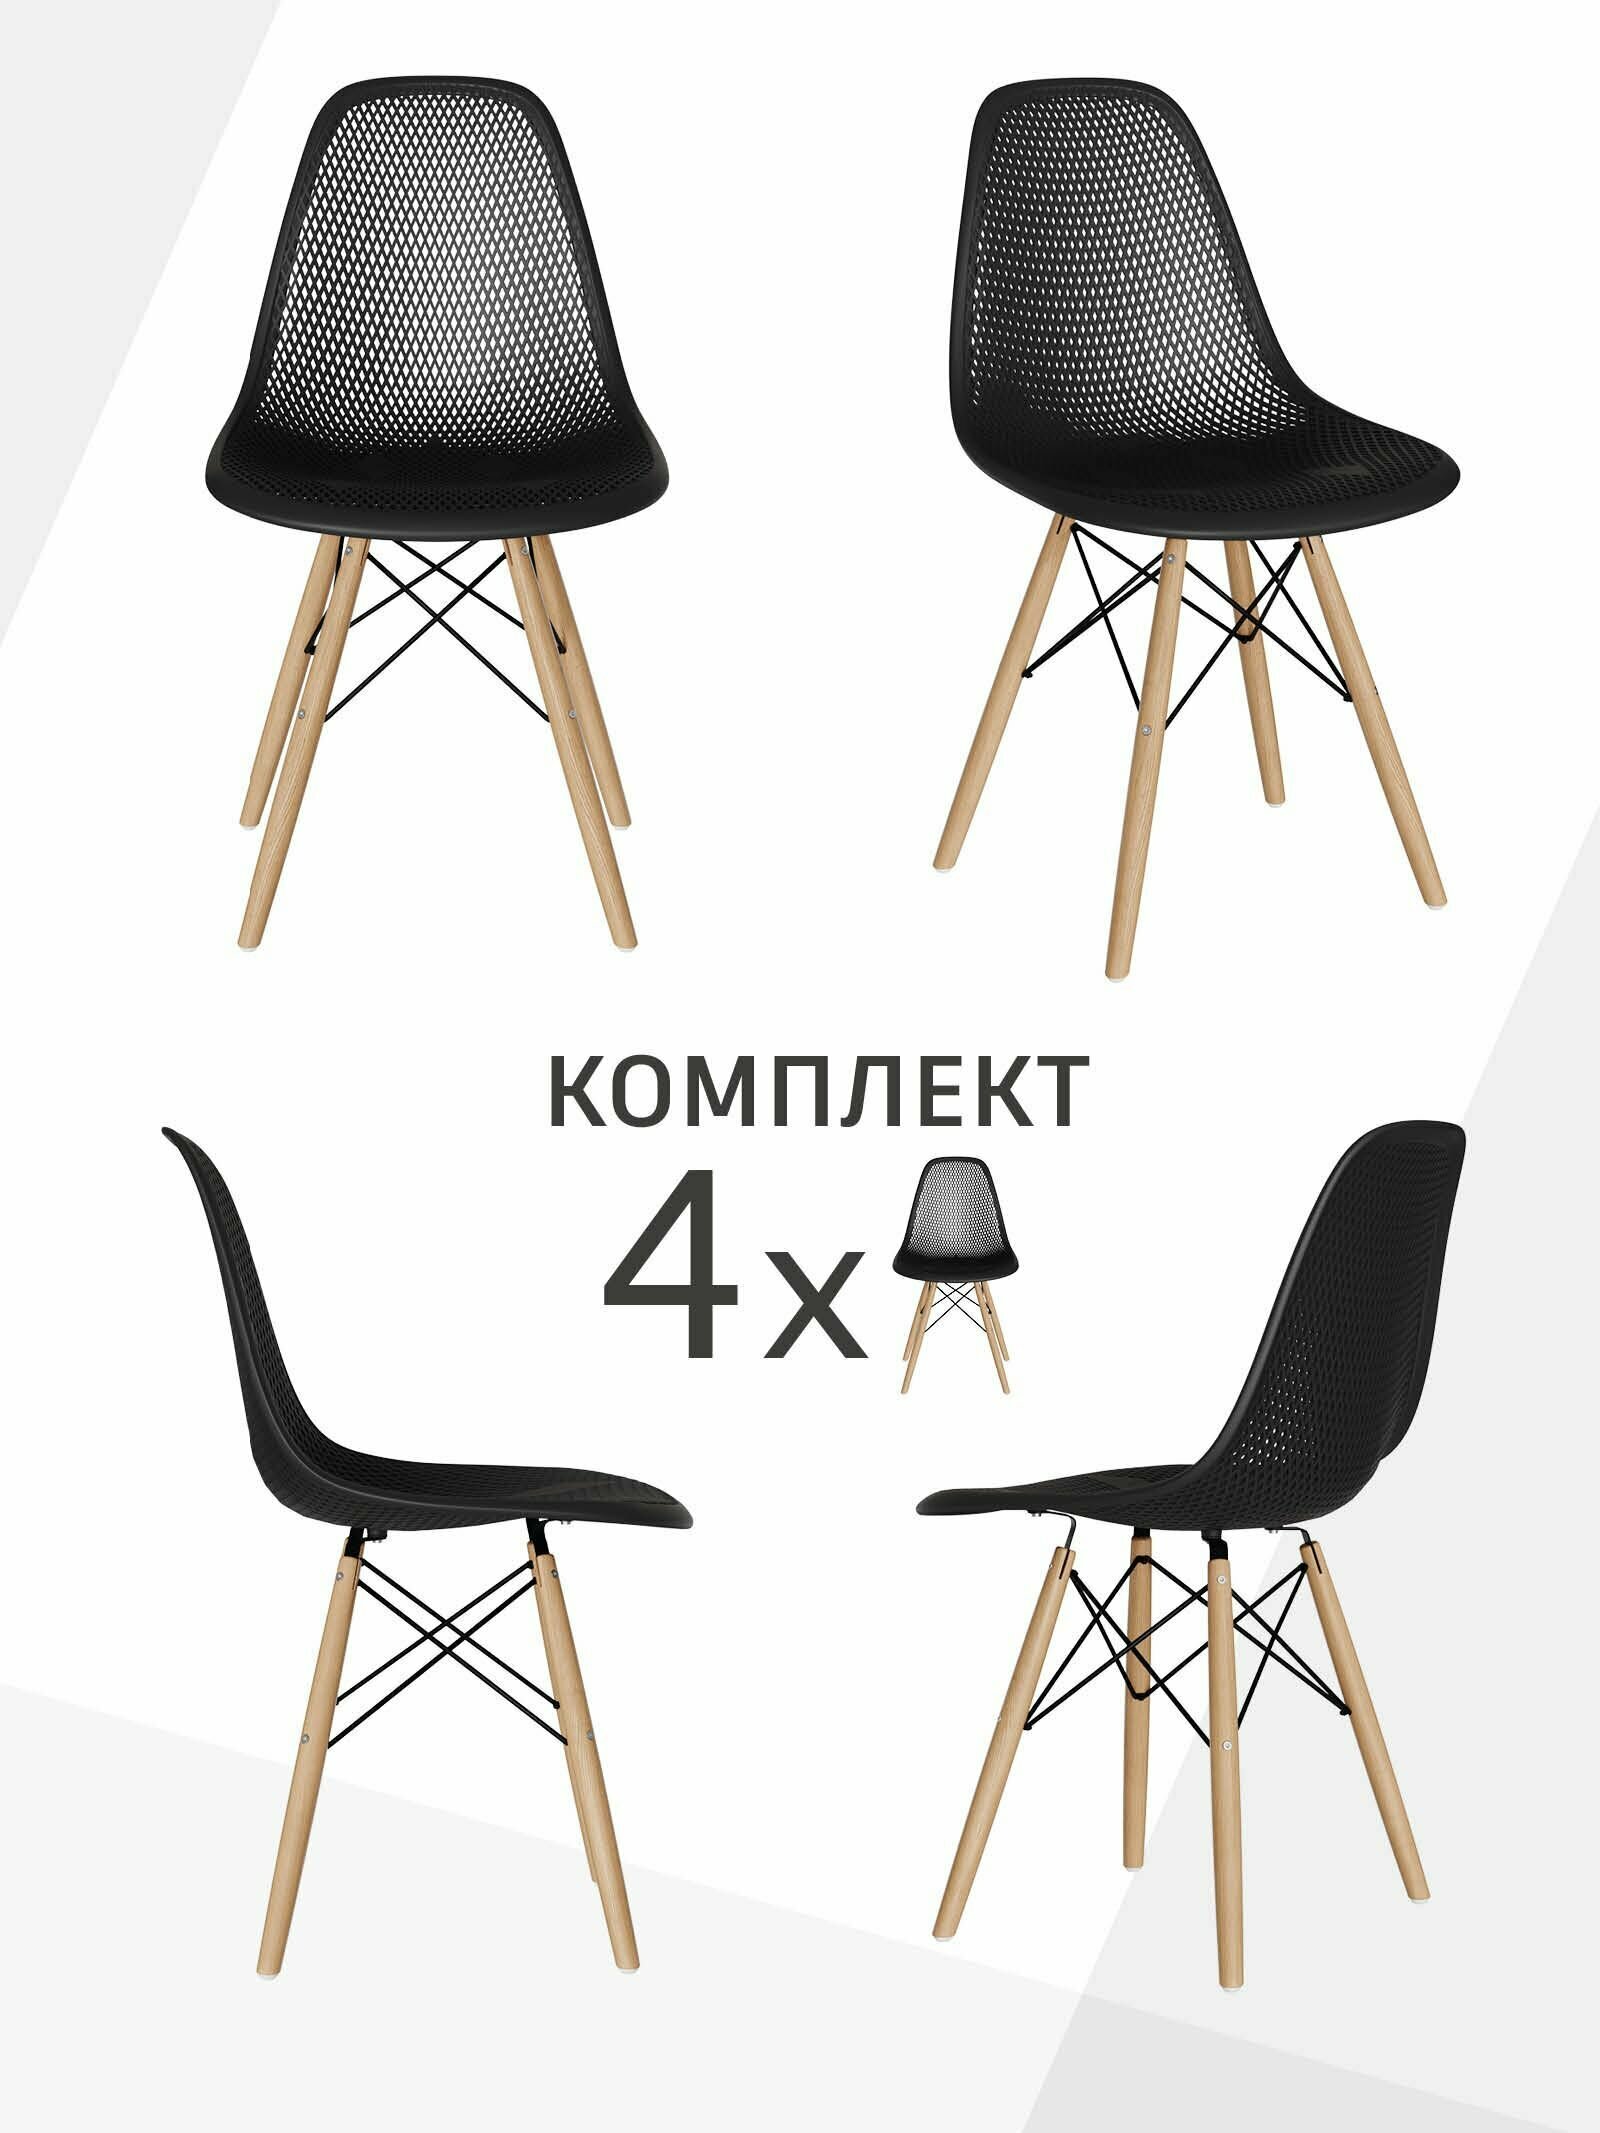 Комплект стульев 4 шт для кухни, гостиной, столовой со спинкой EAMES DSW, мебель для дачи и офиса